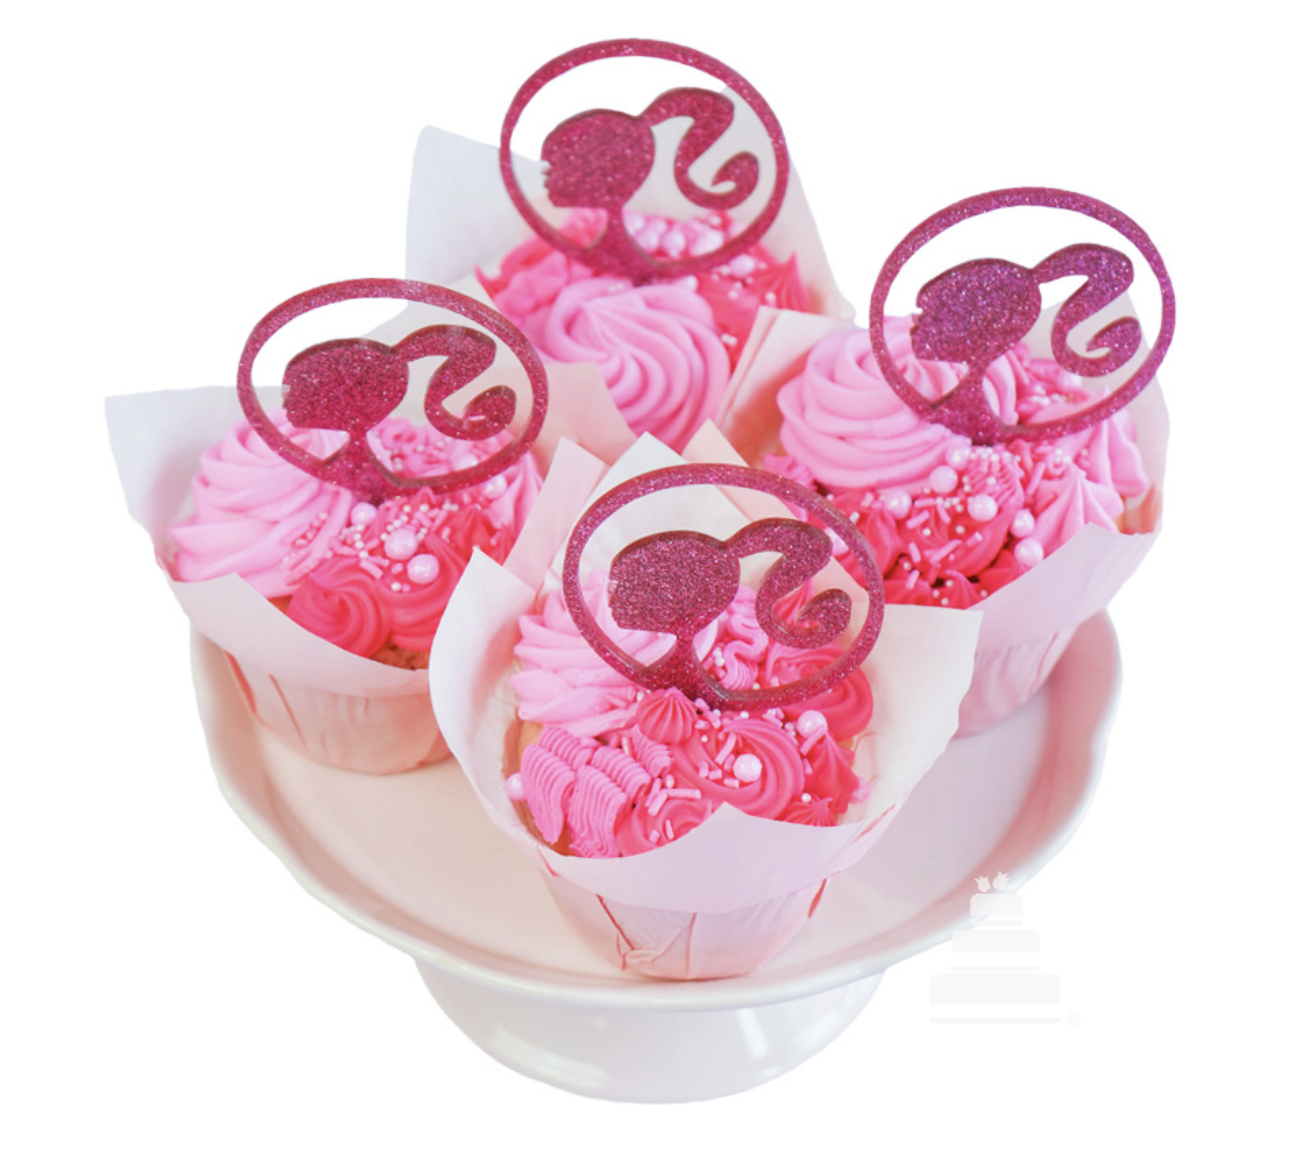 Cup cakes color rosa y con el logo de Barbie 